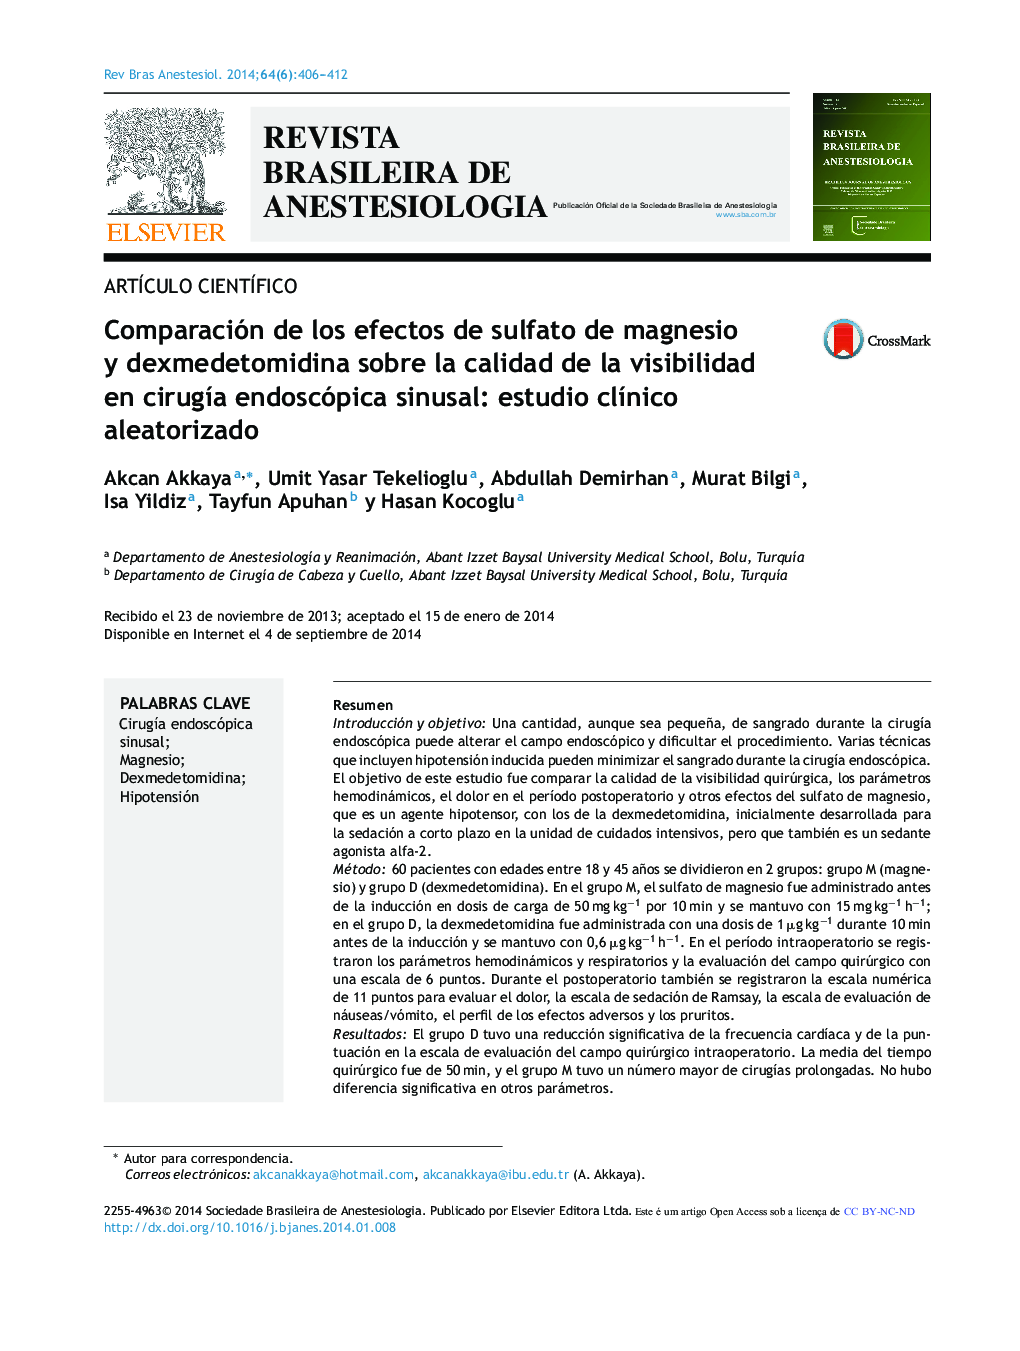 Comparación de los efectos de sulfato de magnesio y dexmedetomidina sobre la calidad de la visibilidad en cirugía endoscópica sinusal: estudio clínico aleatorizado